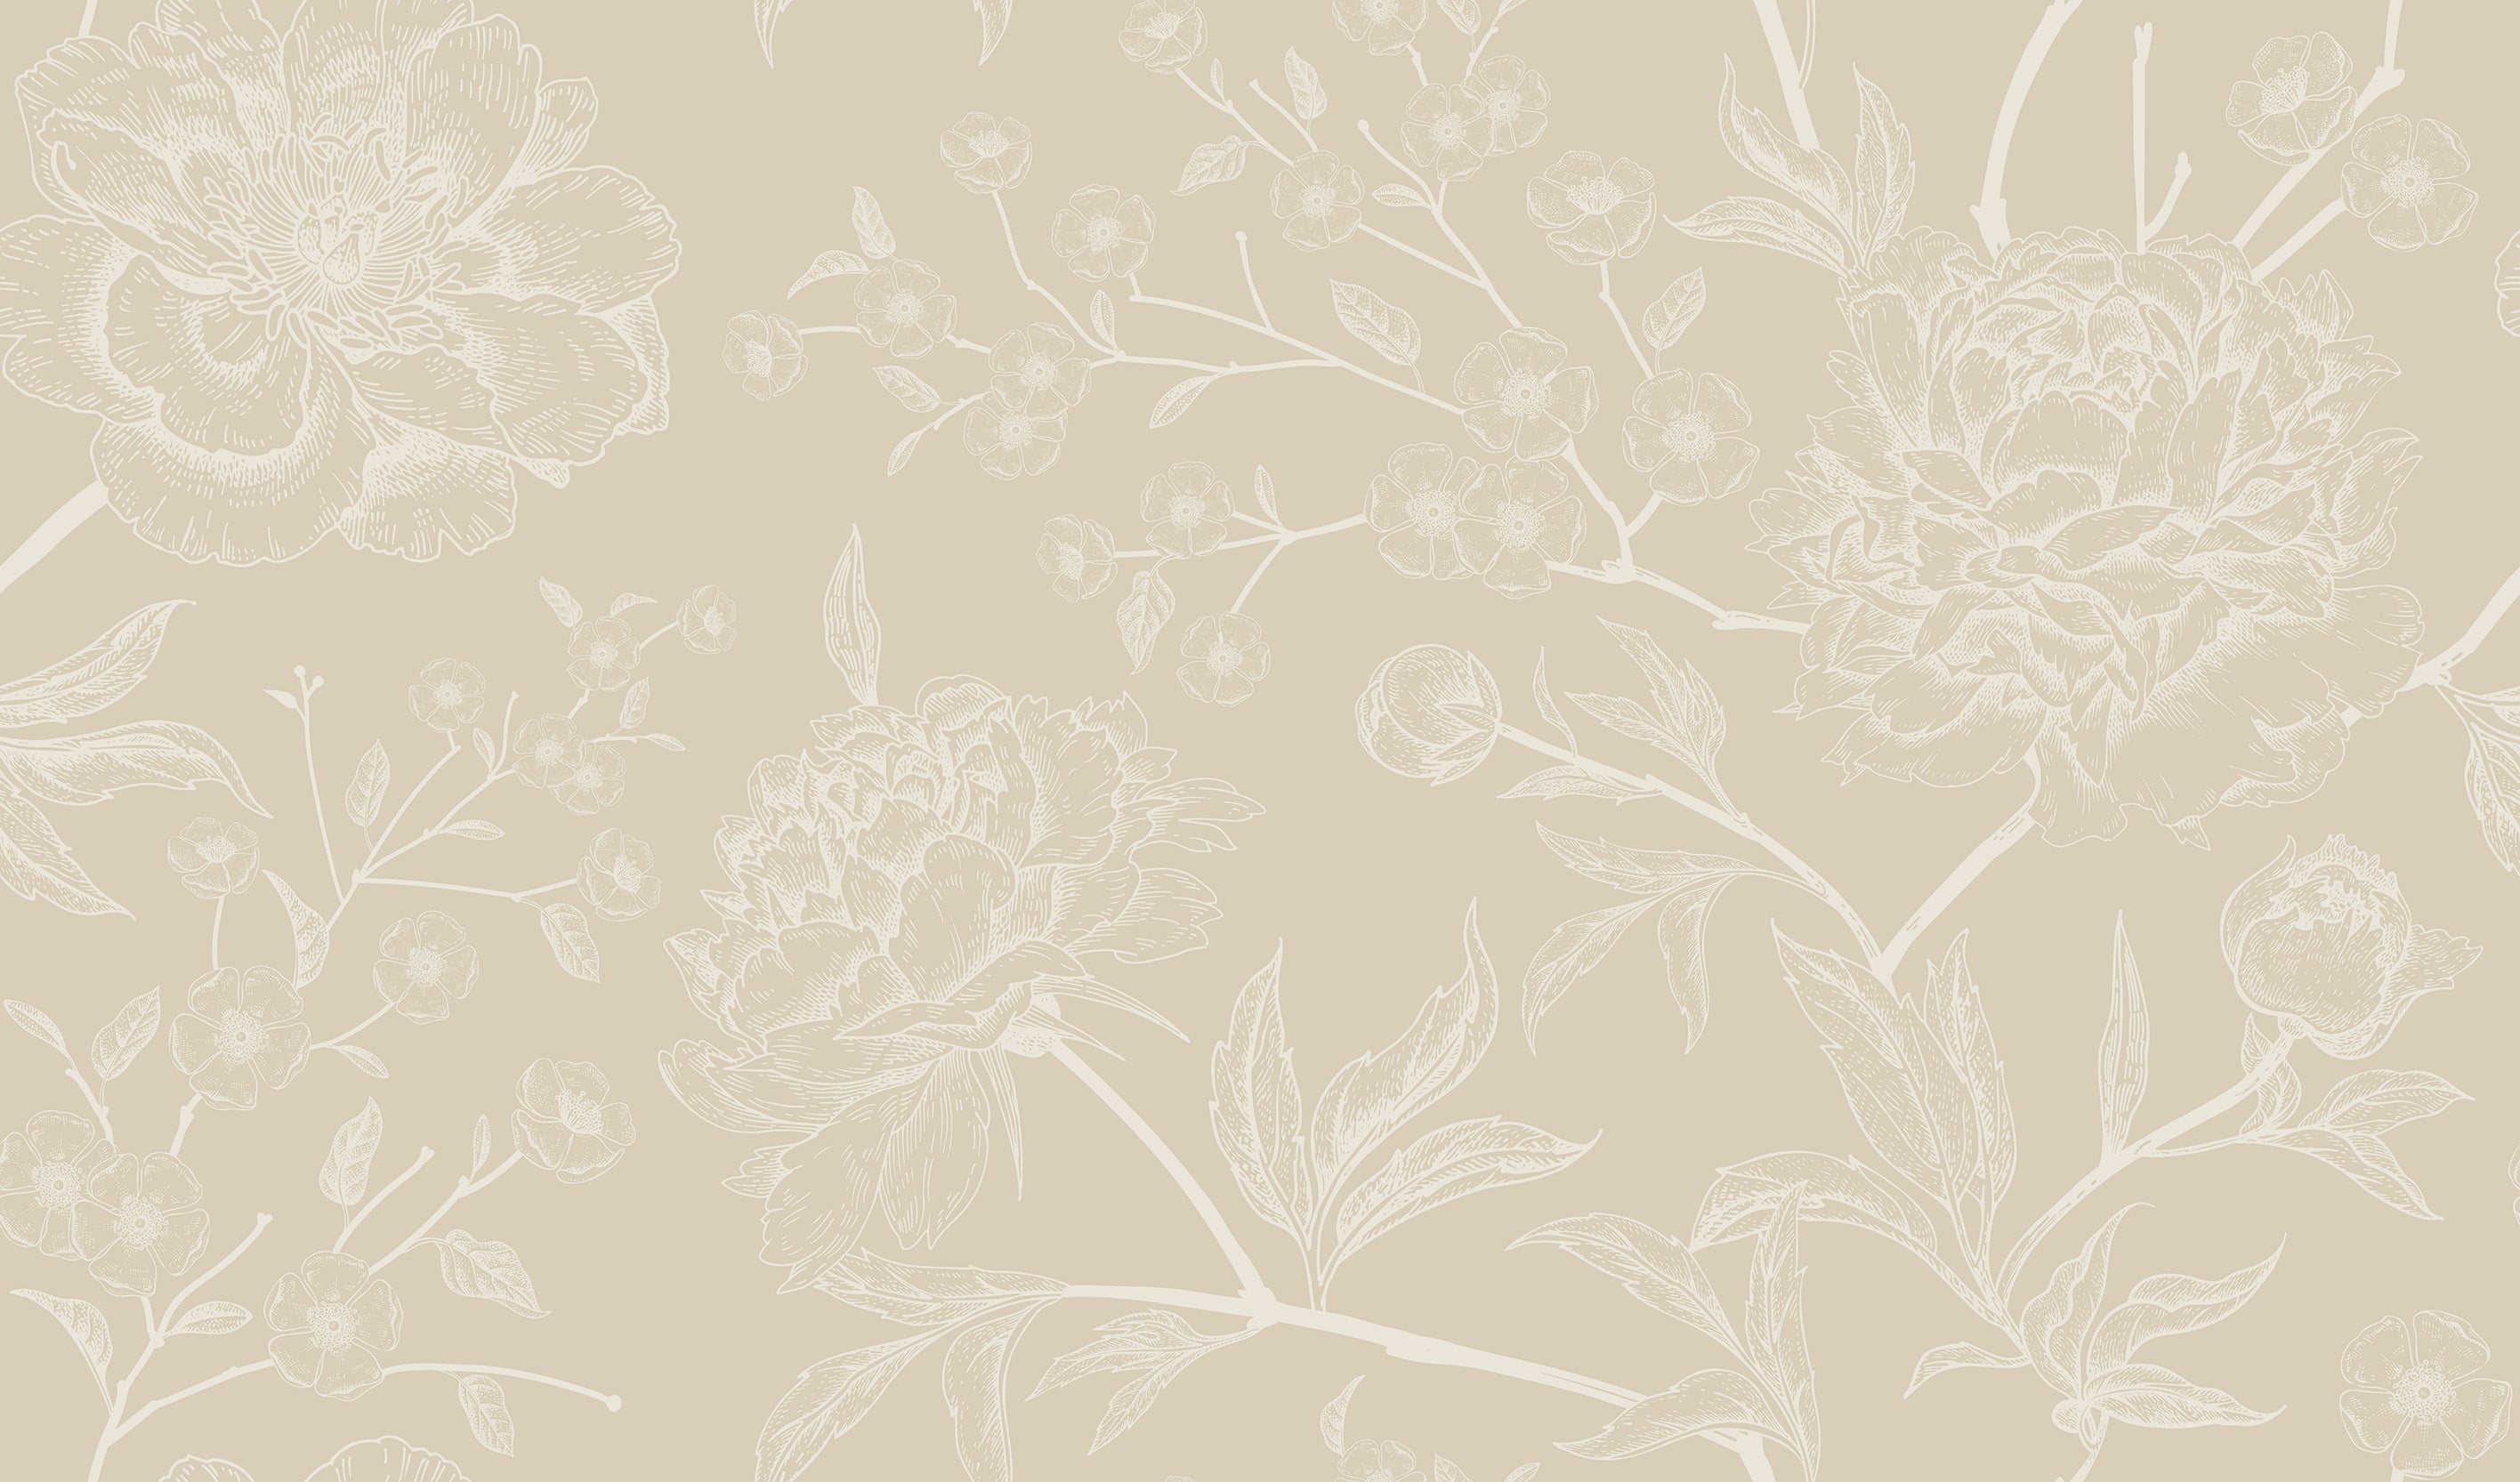 Subtle Botany Beige - Subtle Beige Floral Wallpaper Mural